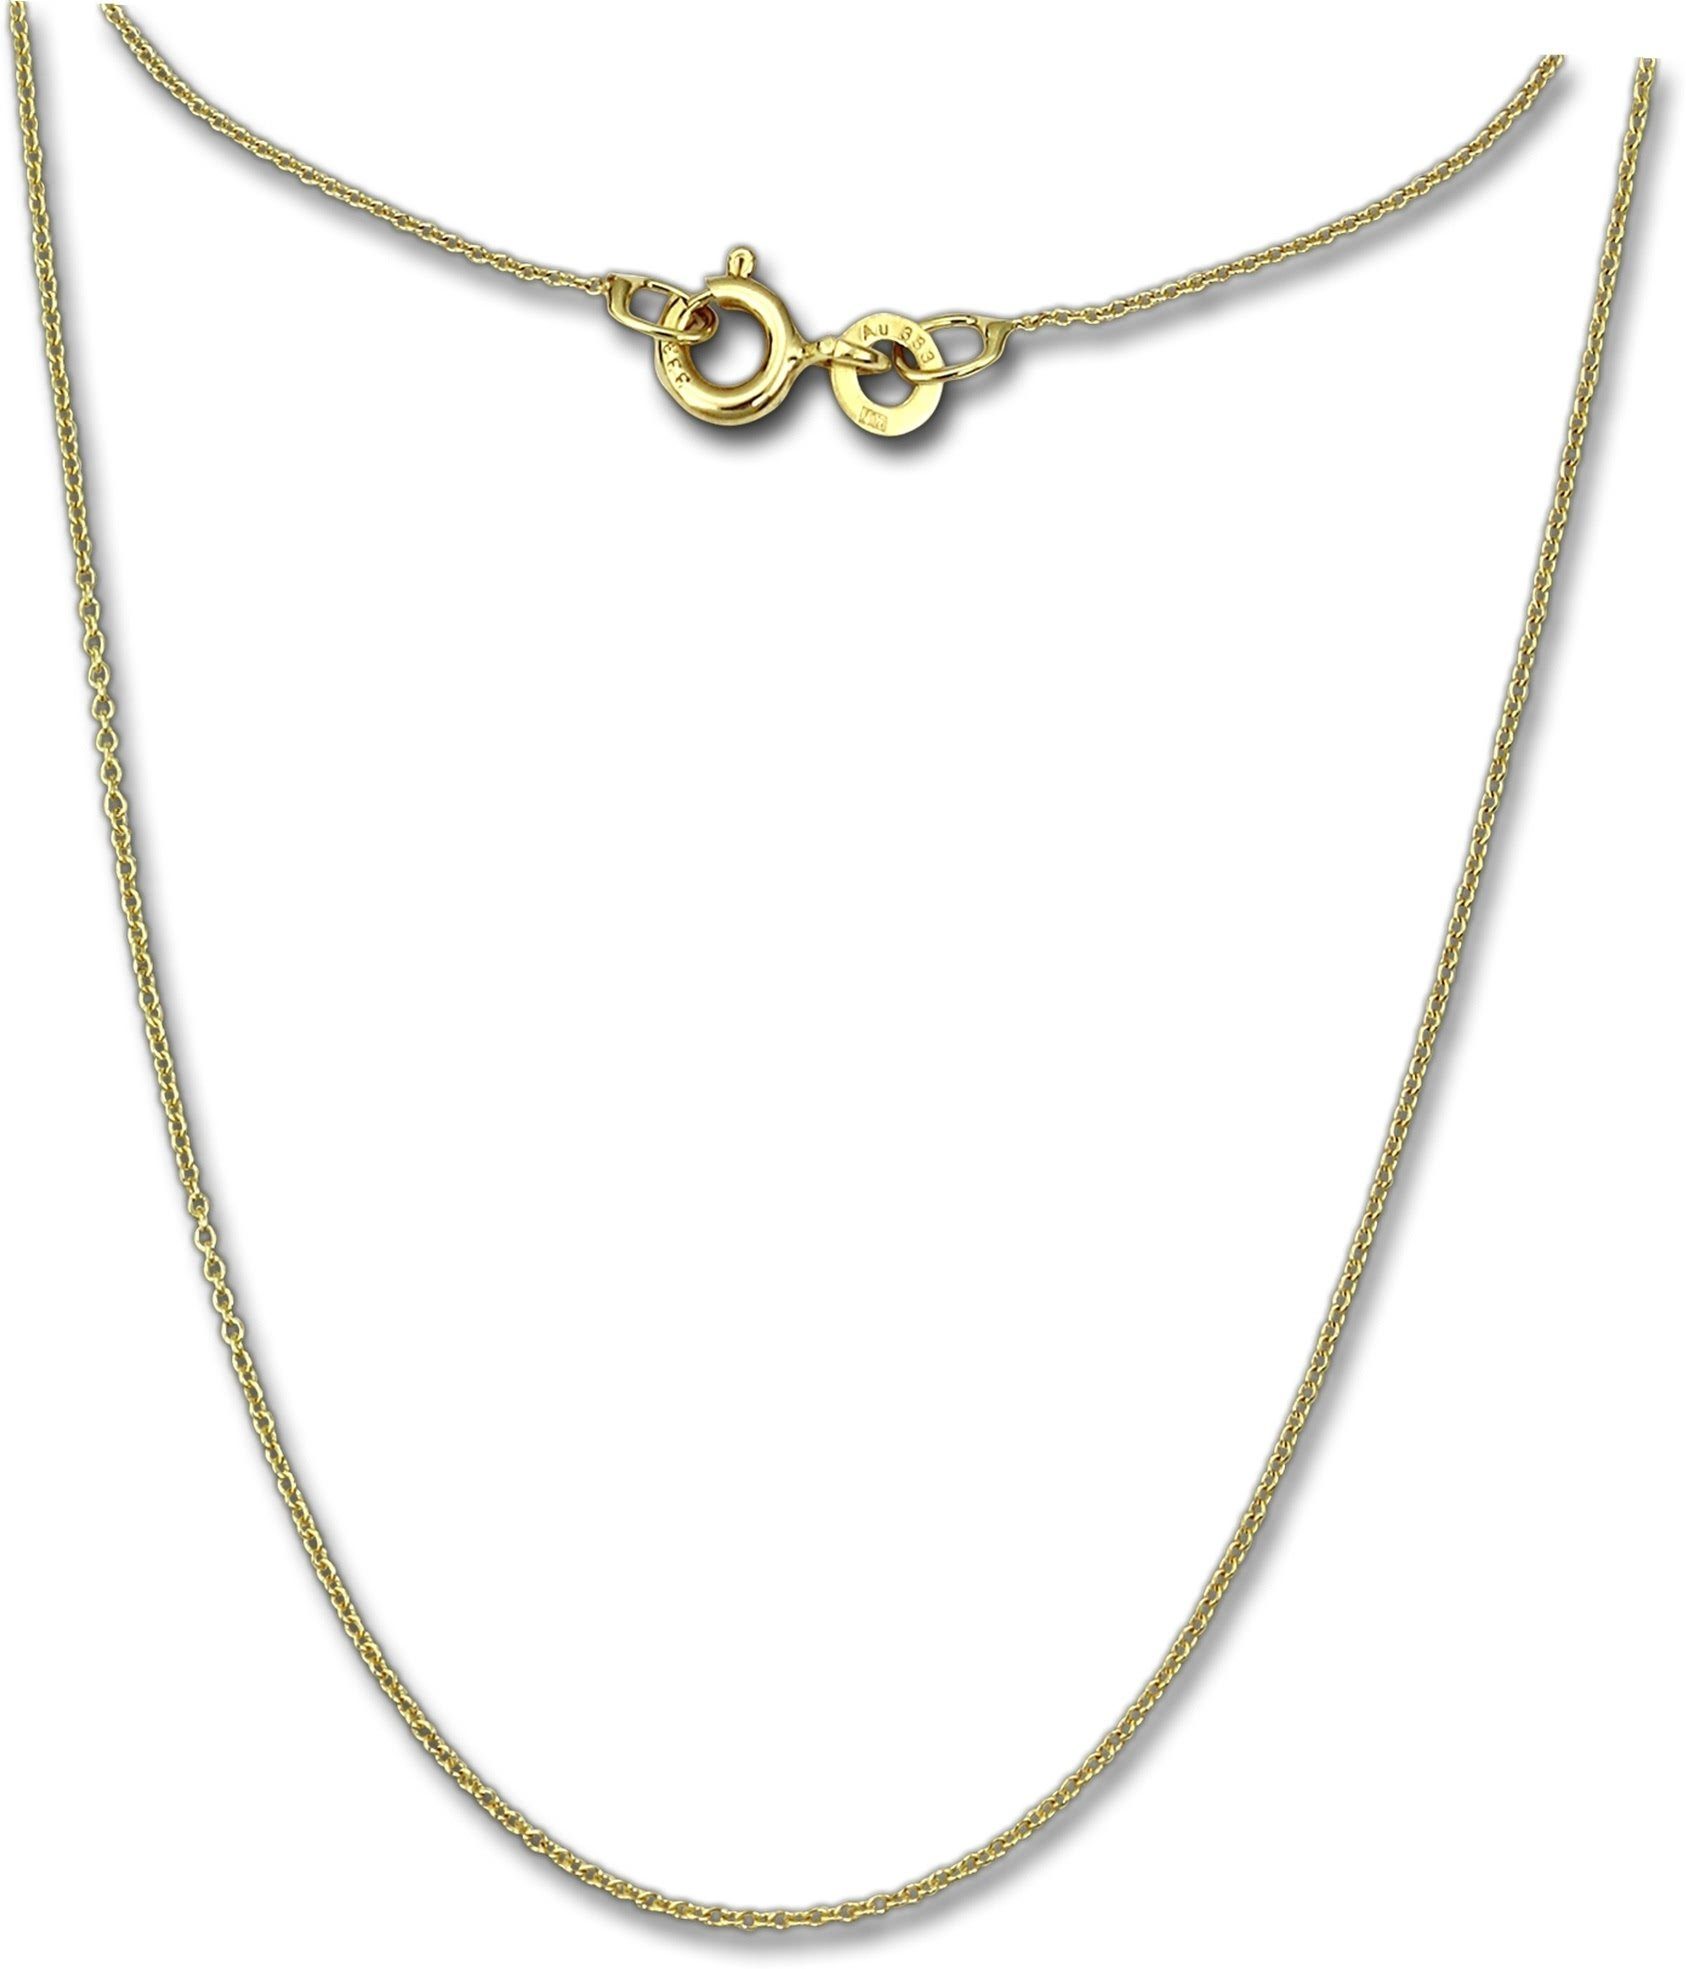 GoldDream Goldkette GoldDream Collier Halskette 8K Gold (Collier), Damen Colliers Halskette 36cm, 333 Gelbgold - 8 Karat Echtgold, 333er